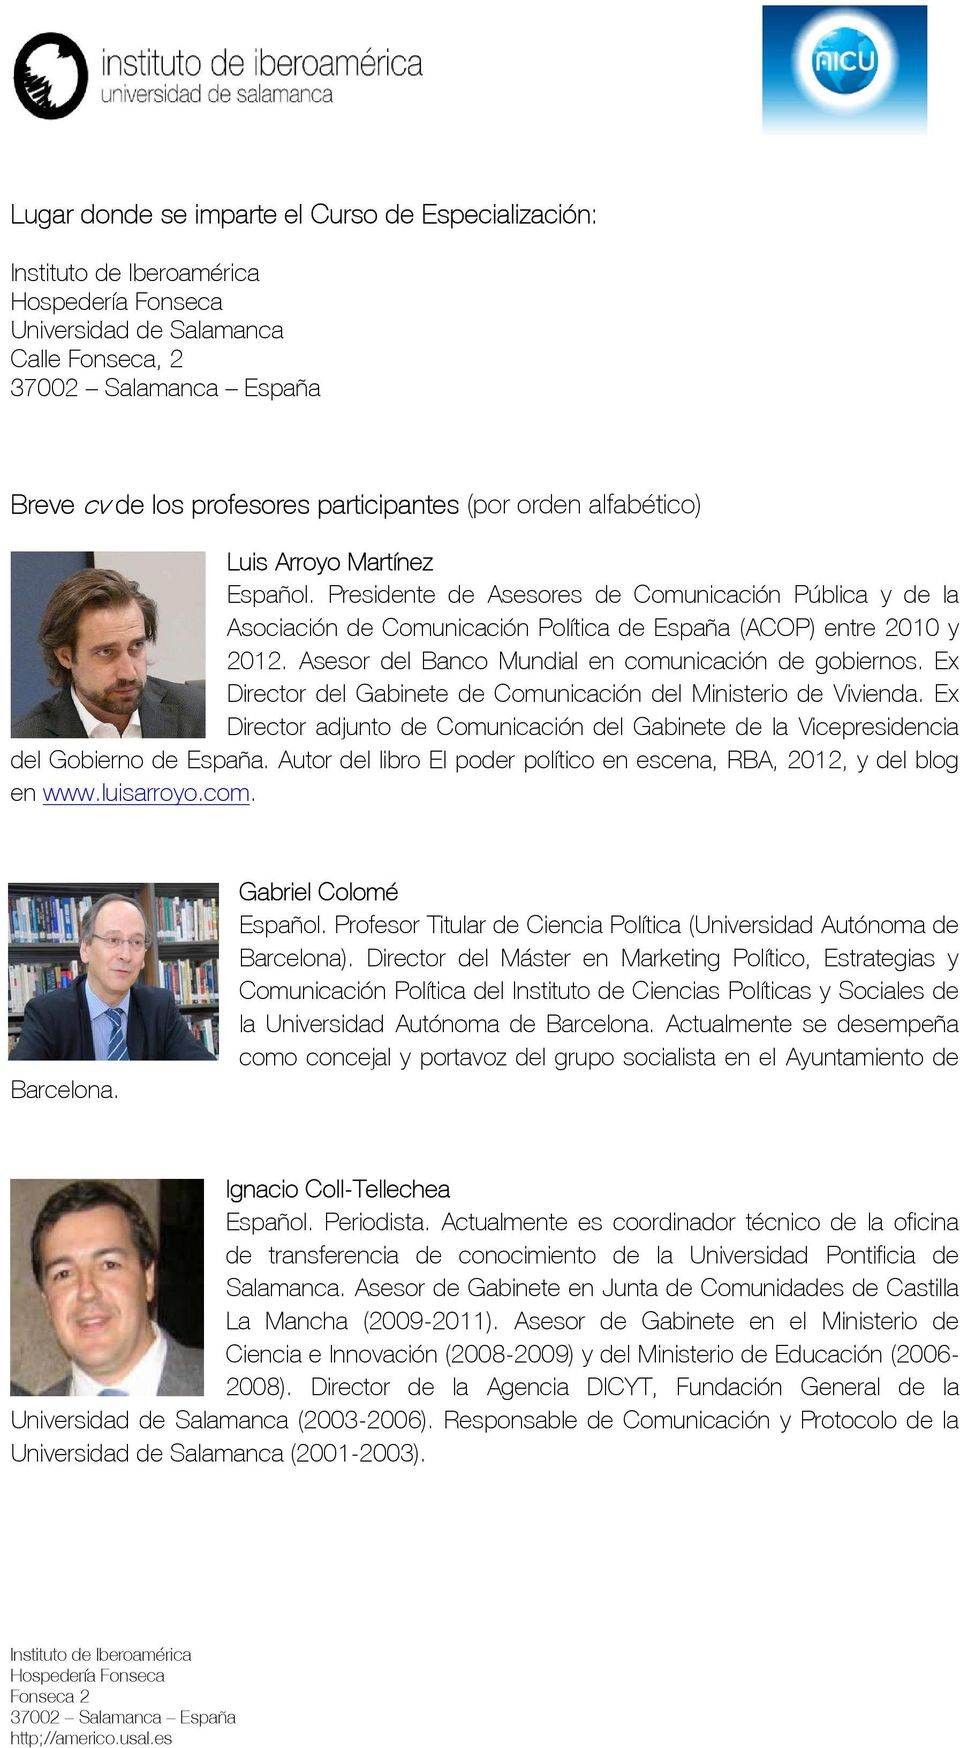 Ex Director del Gabinete de Comunicación del Ministerio de Vivienda. Ex Director adjunto de Comunicación del Gabinete de la Vicepresidencia del Gobierno de España.